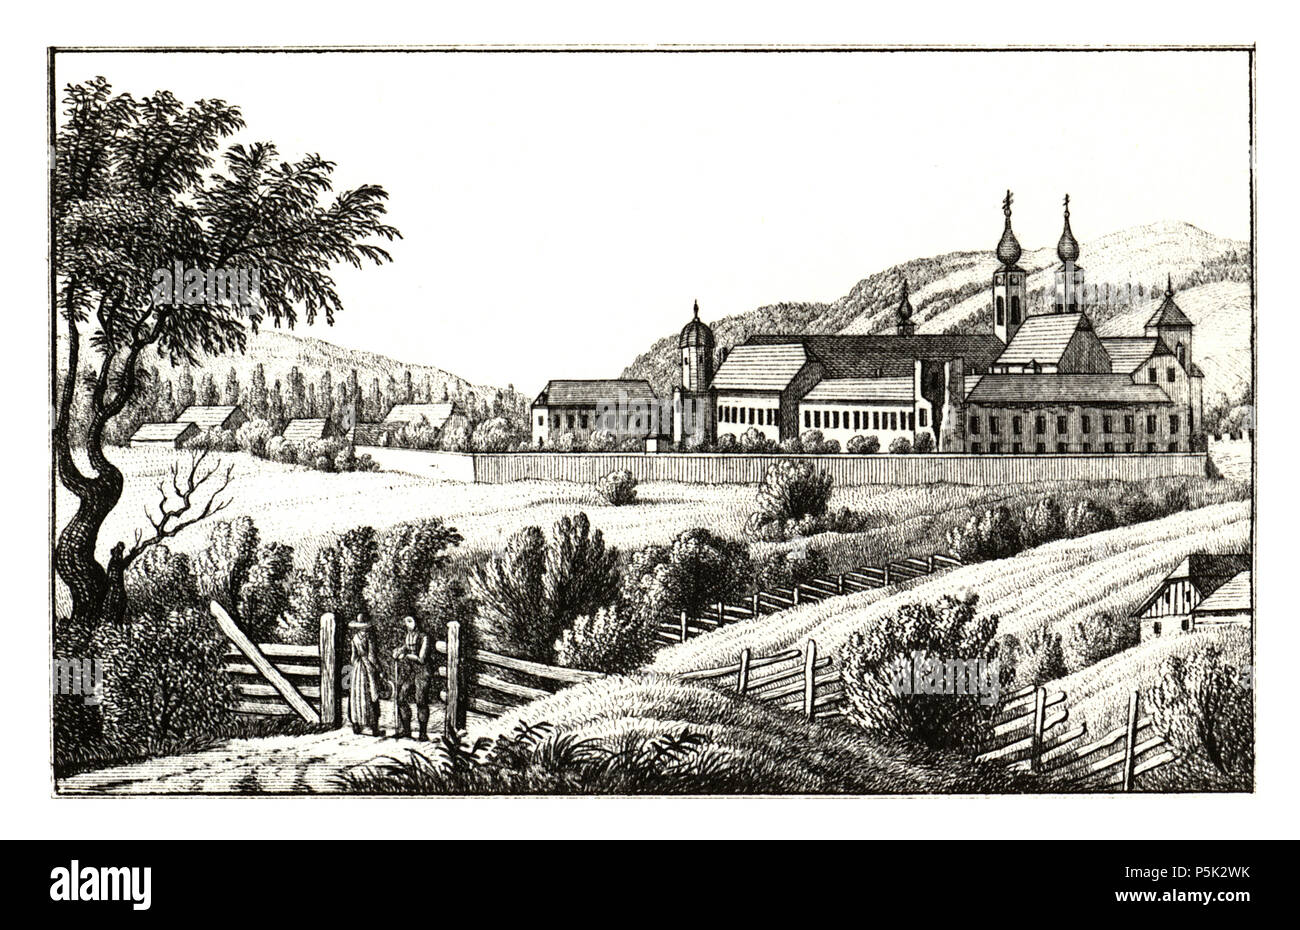 36 277 Stift Seckau, Vordernberg - gez. S. Kölbl - J.F.Kaiser Lithografirte Ansichten der Steiermark 1830 Stock Photo